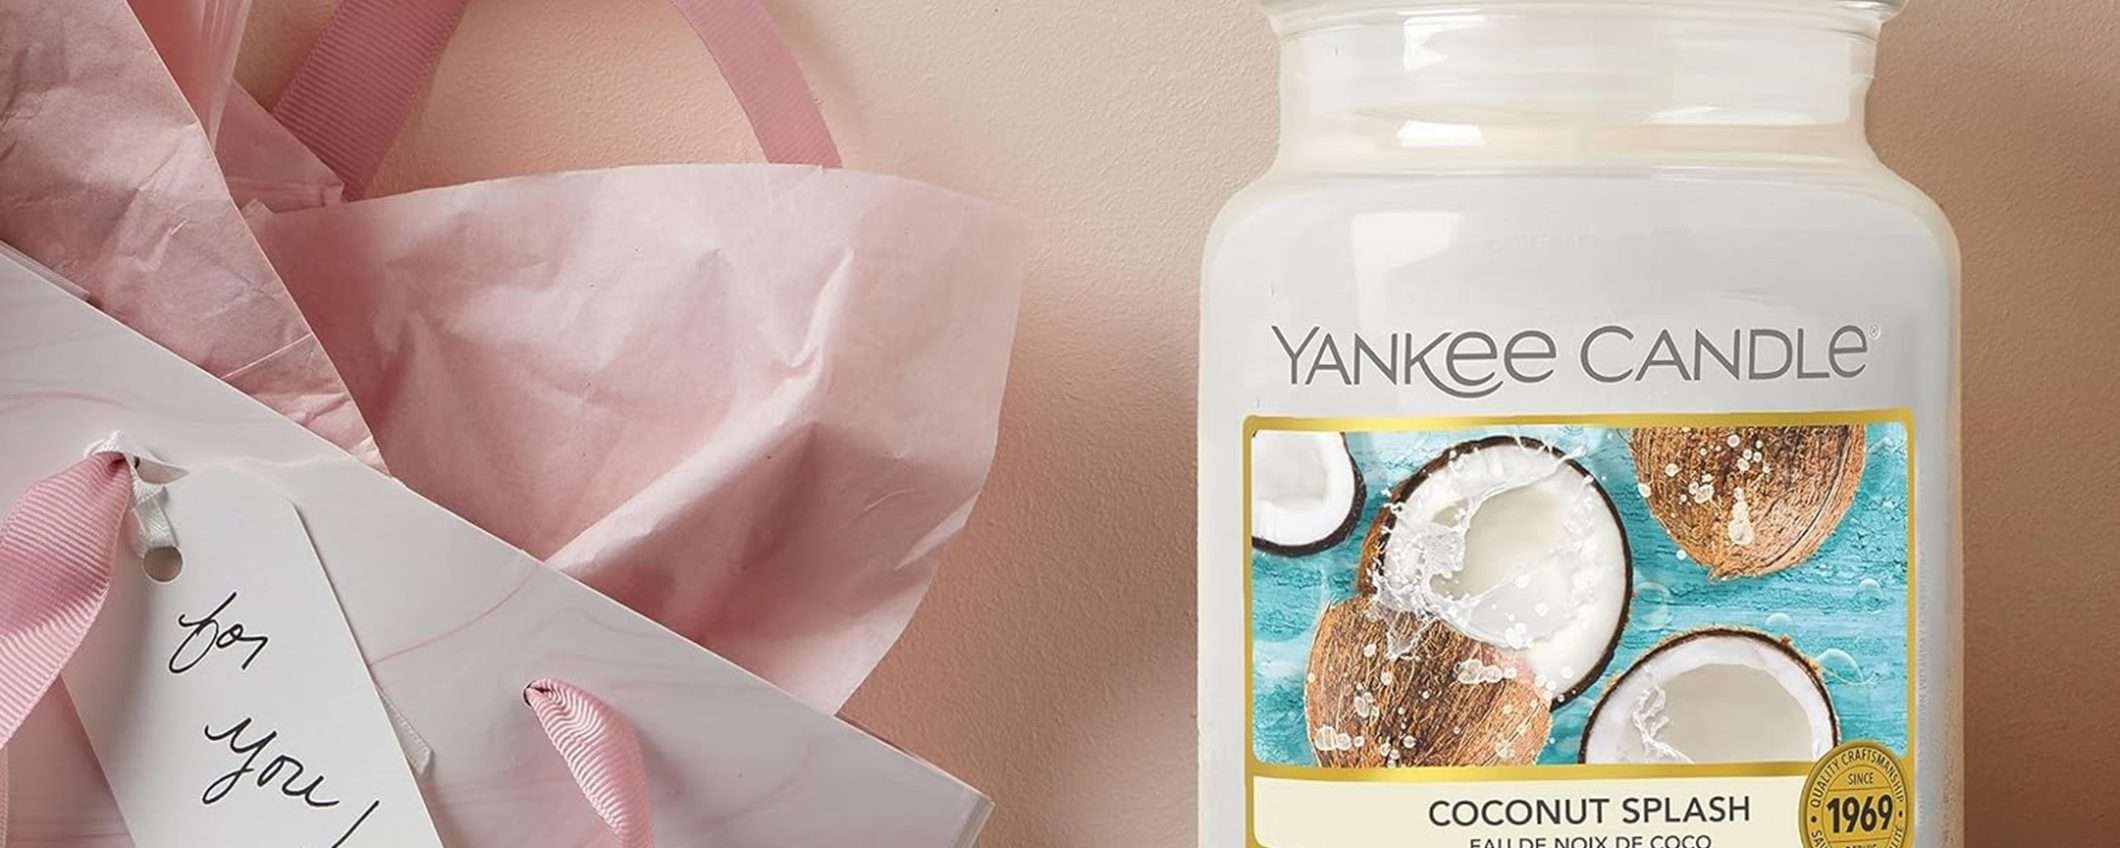 Candela Yankee Candle: l'estiva profumazione “Latte Di Cocco” in giara grande scontata del 26%